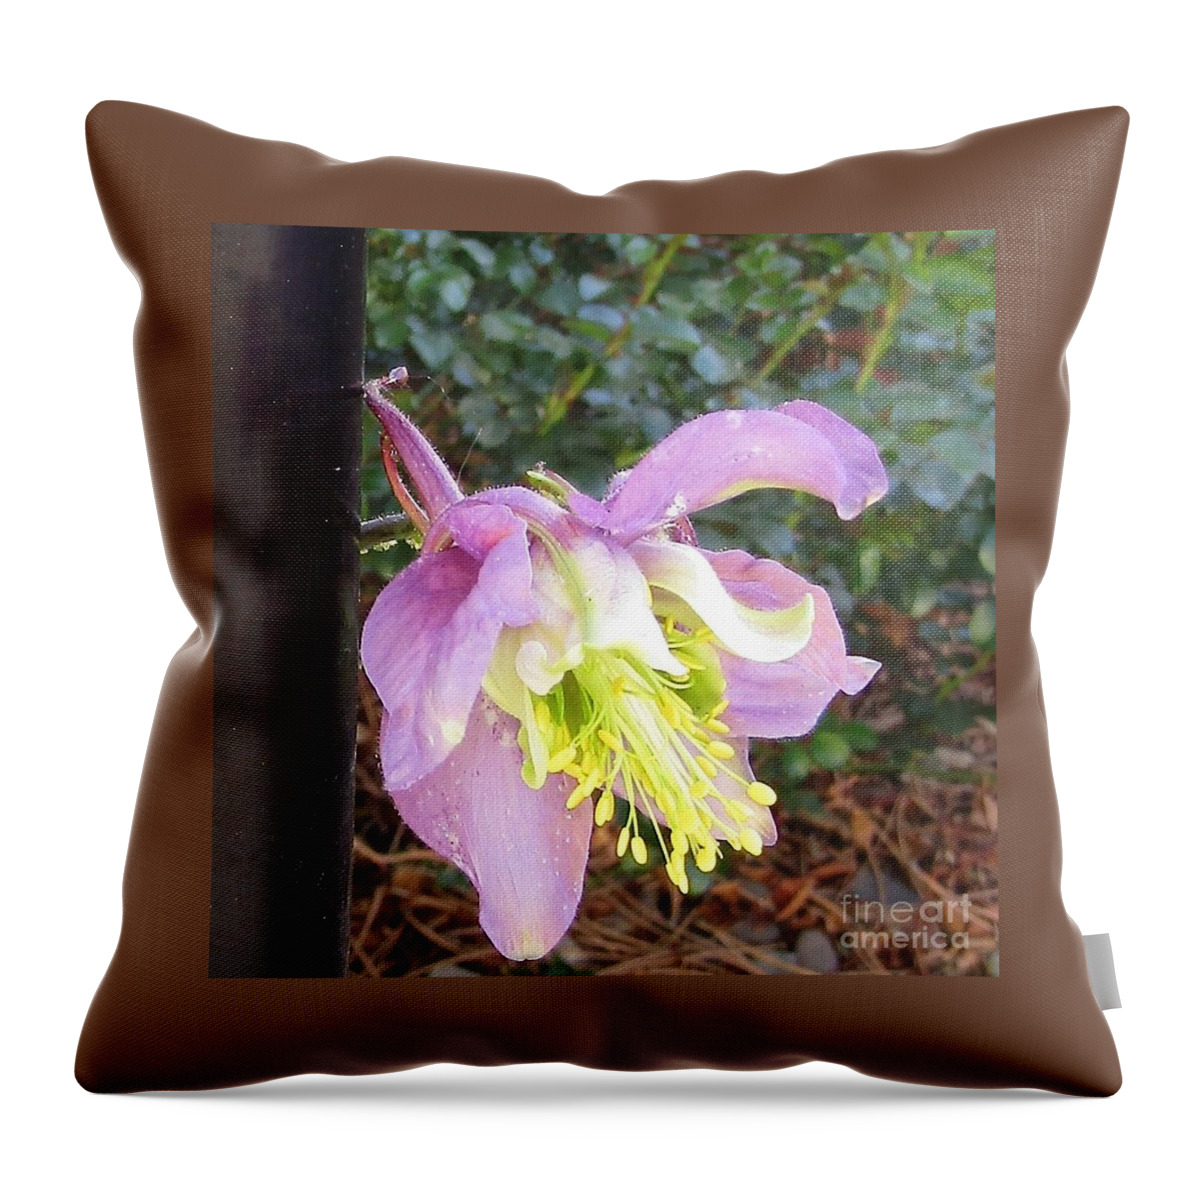 A Little Raggety Ann Flower Throw Pillow featuring the photograph Little Peek-a-Boo Flower by Phyllis Kaltenbach